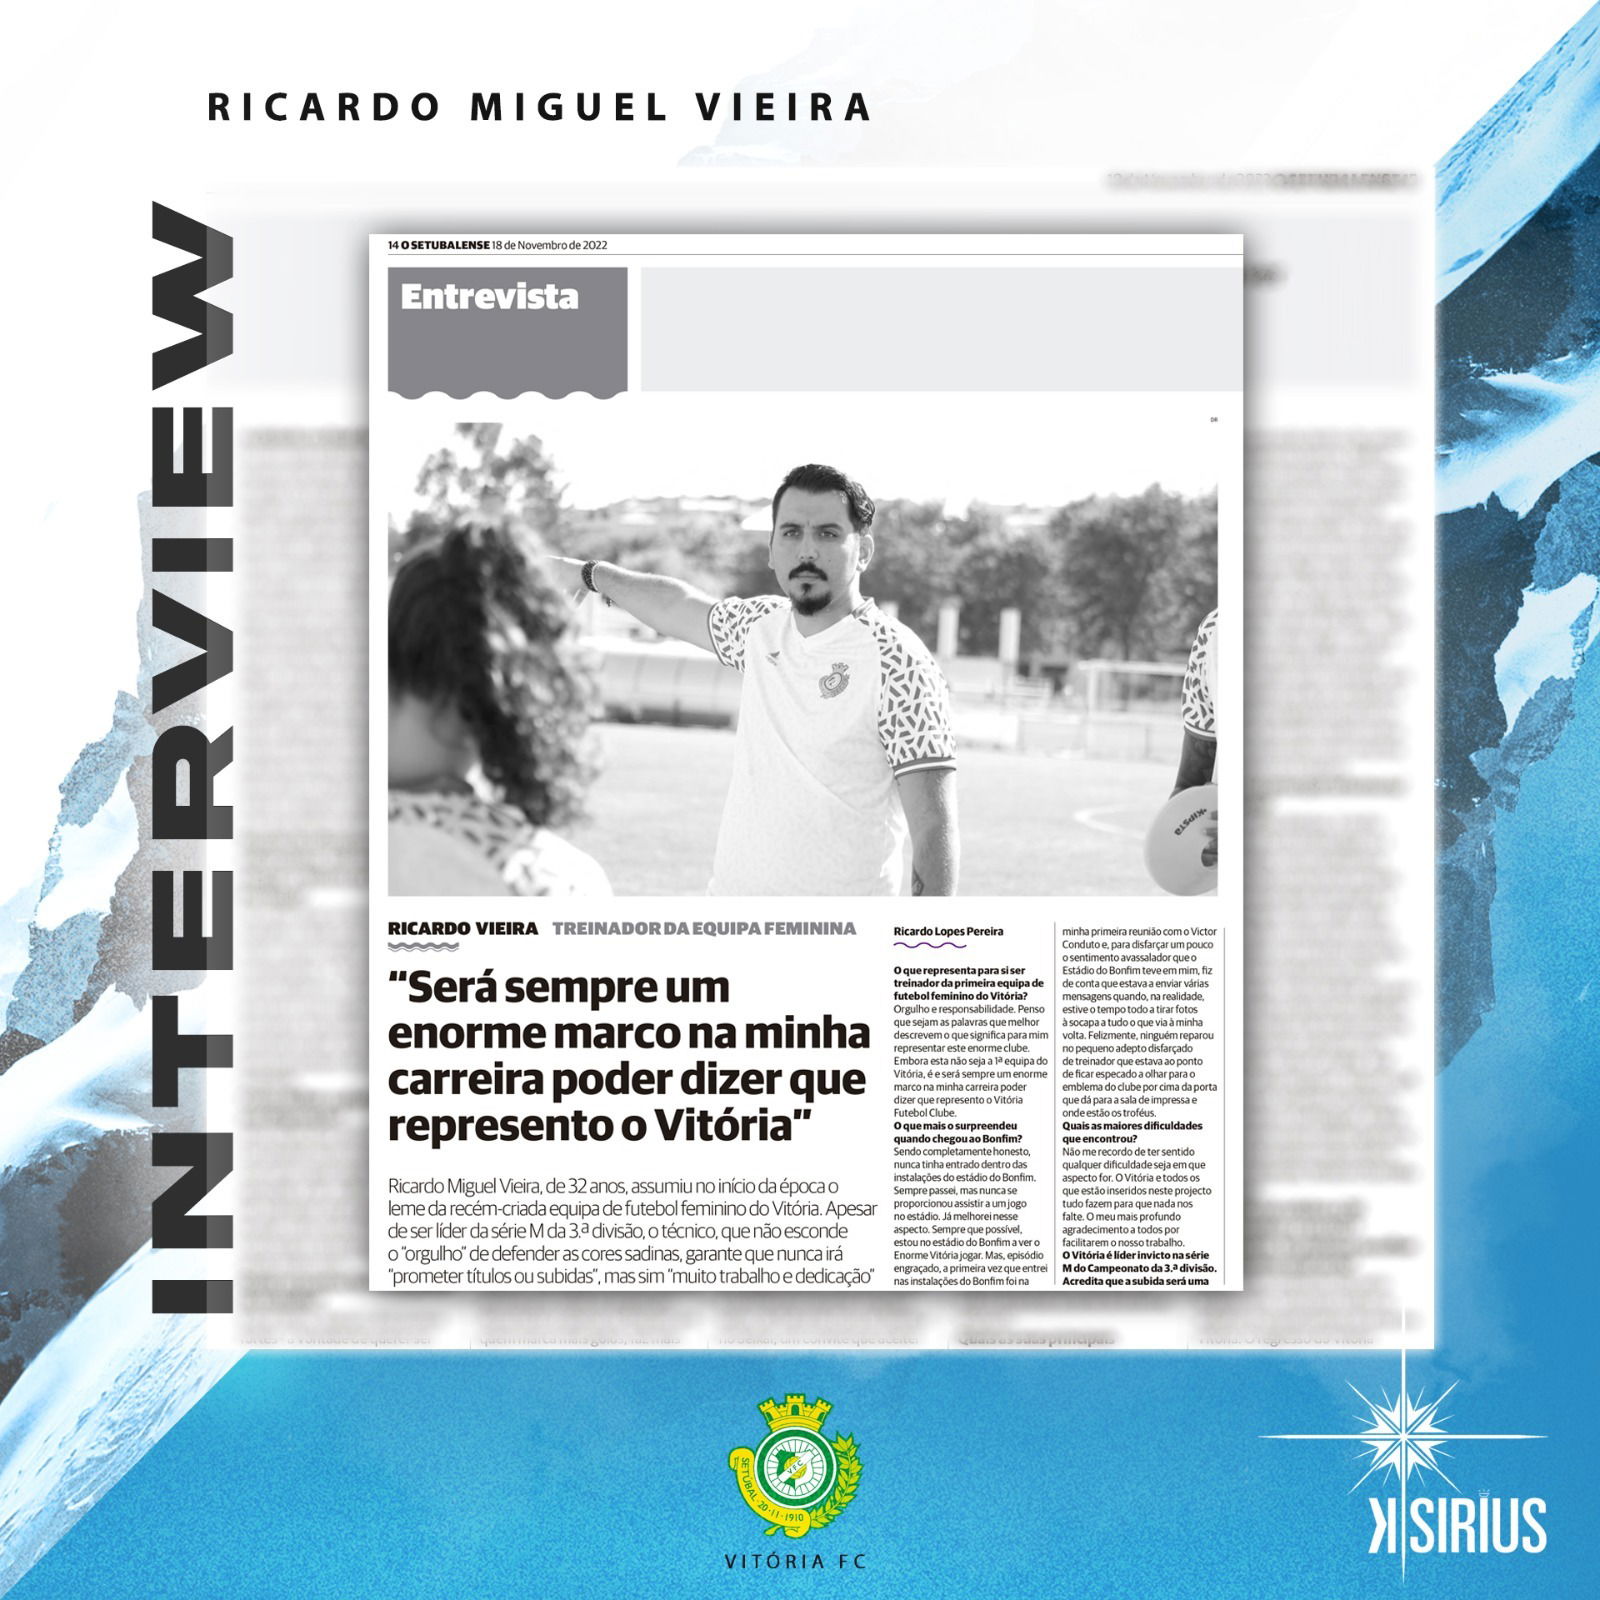 Interview: Ricardo Miguel Vieira (Vitória FC)